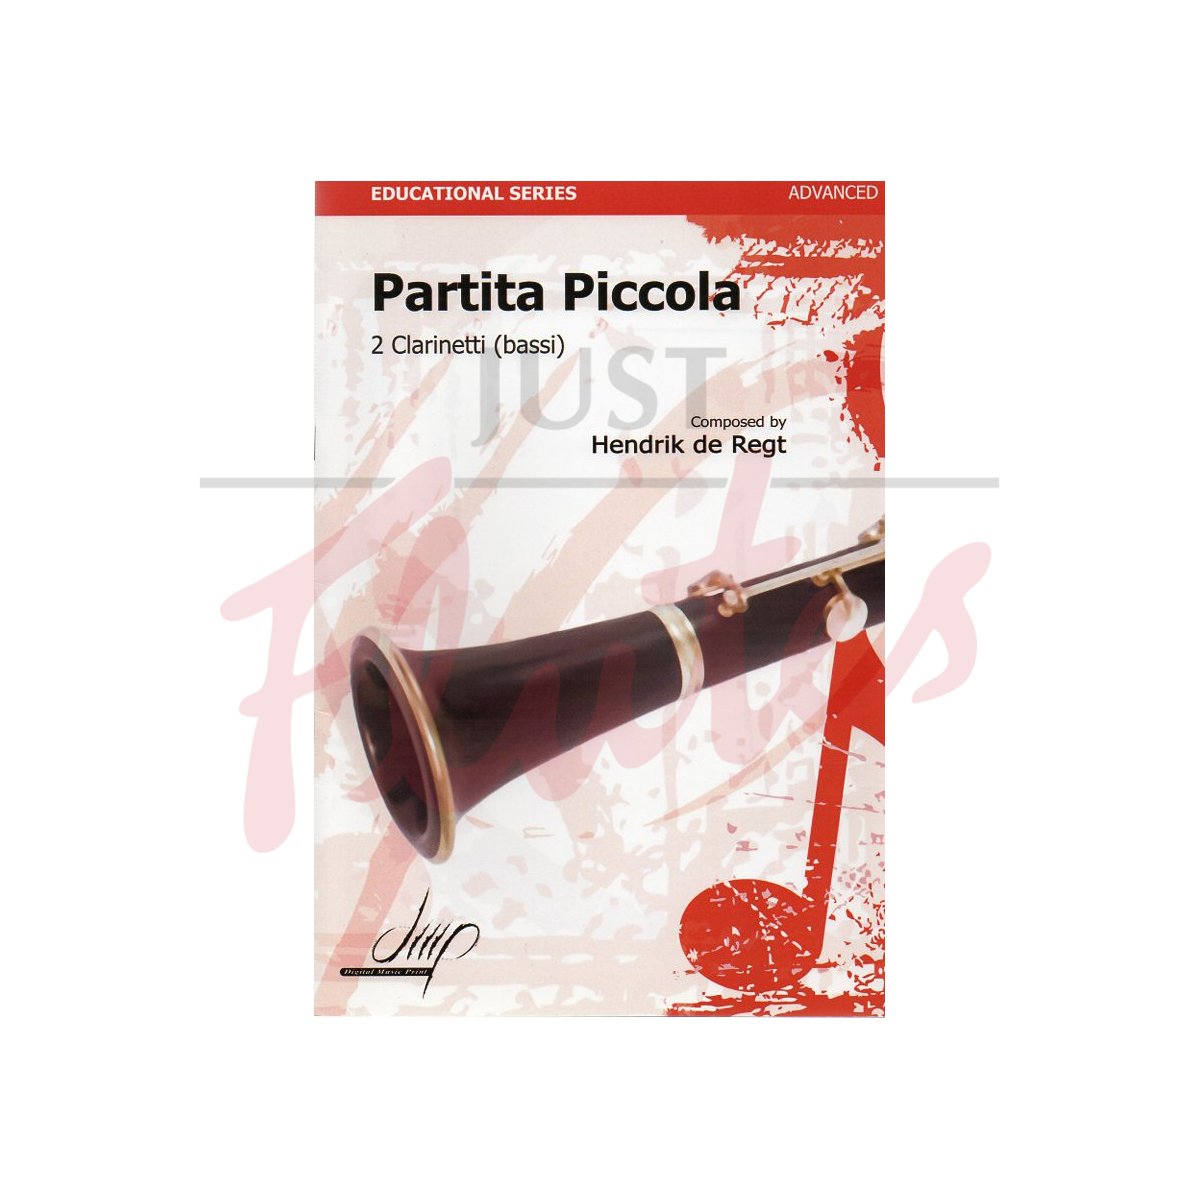 Partita Piccola (2 clts)